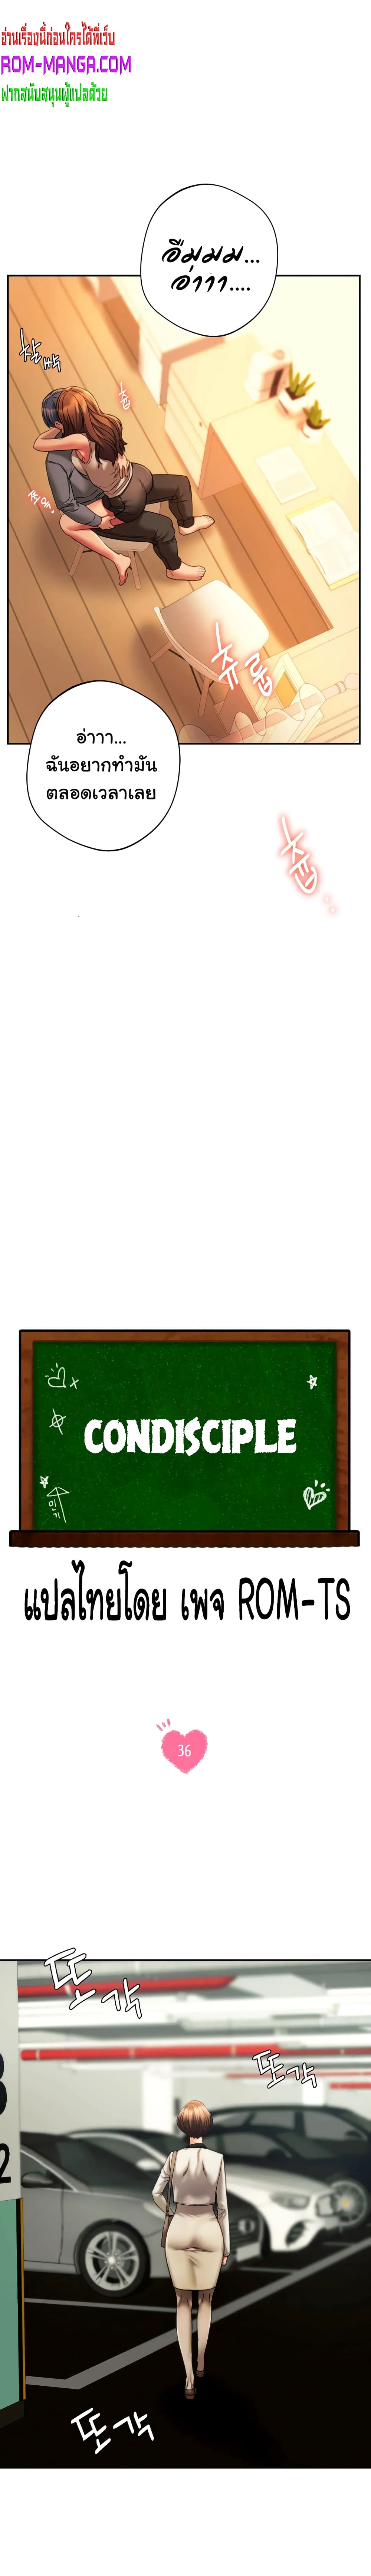 Condisciple 36-36